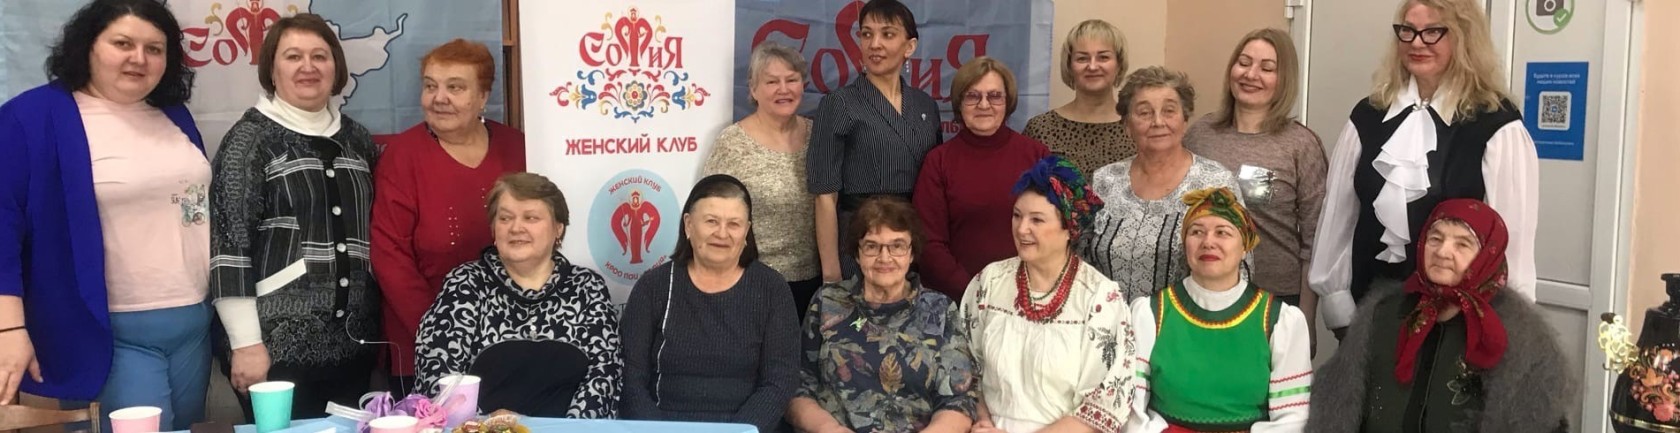 Общественники Емельяновского района организовали женский клуб